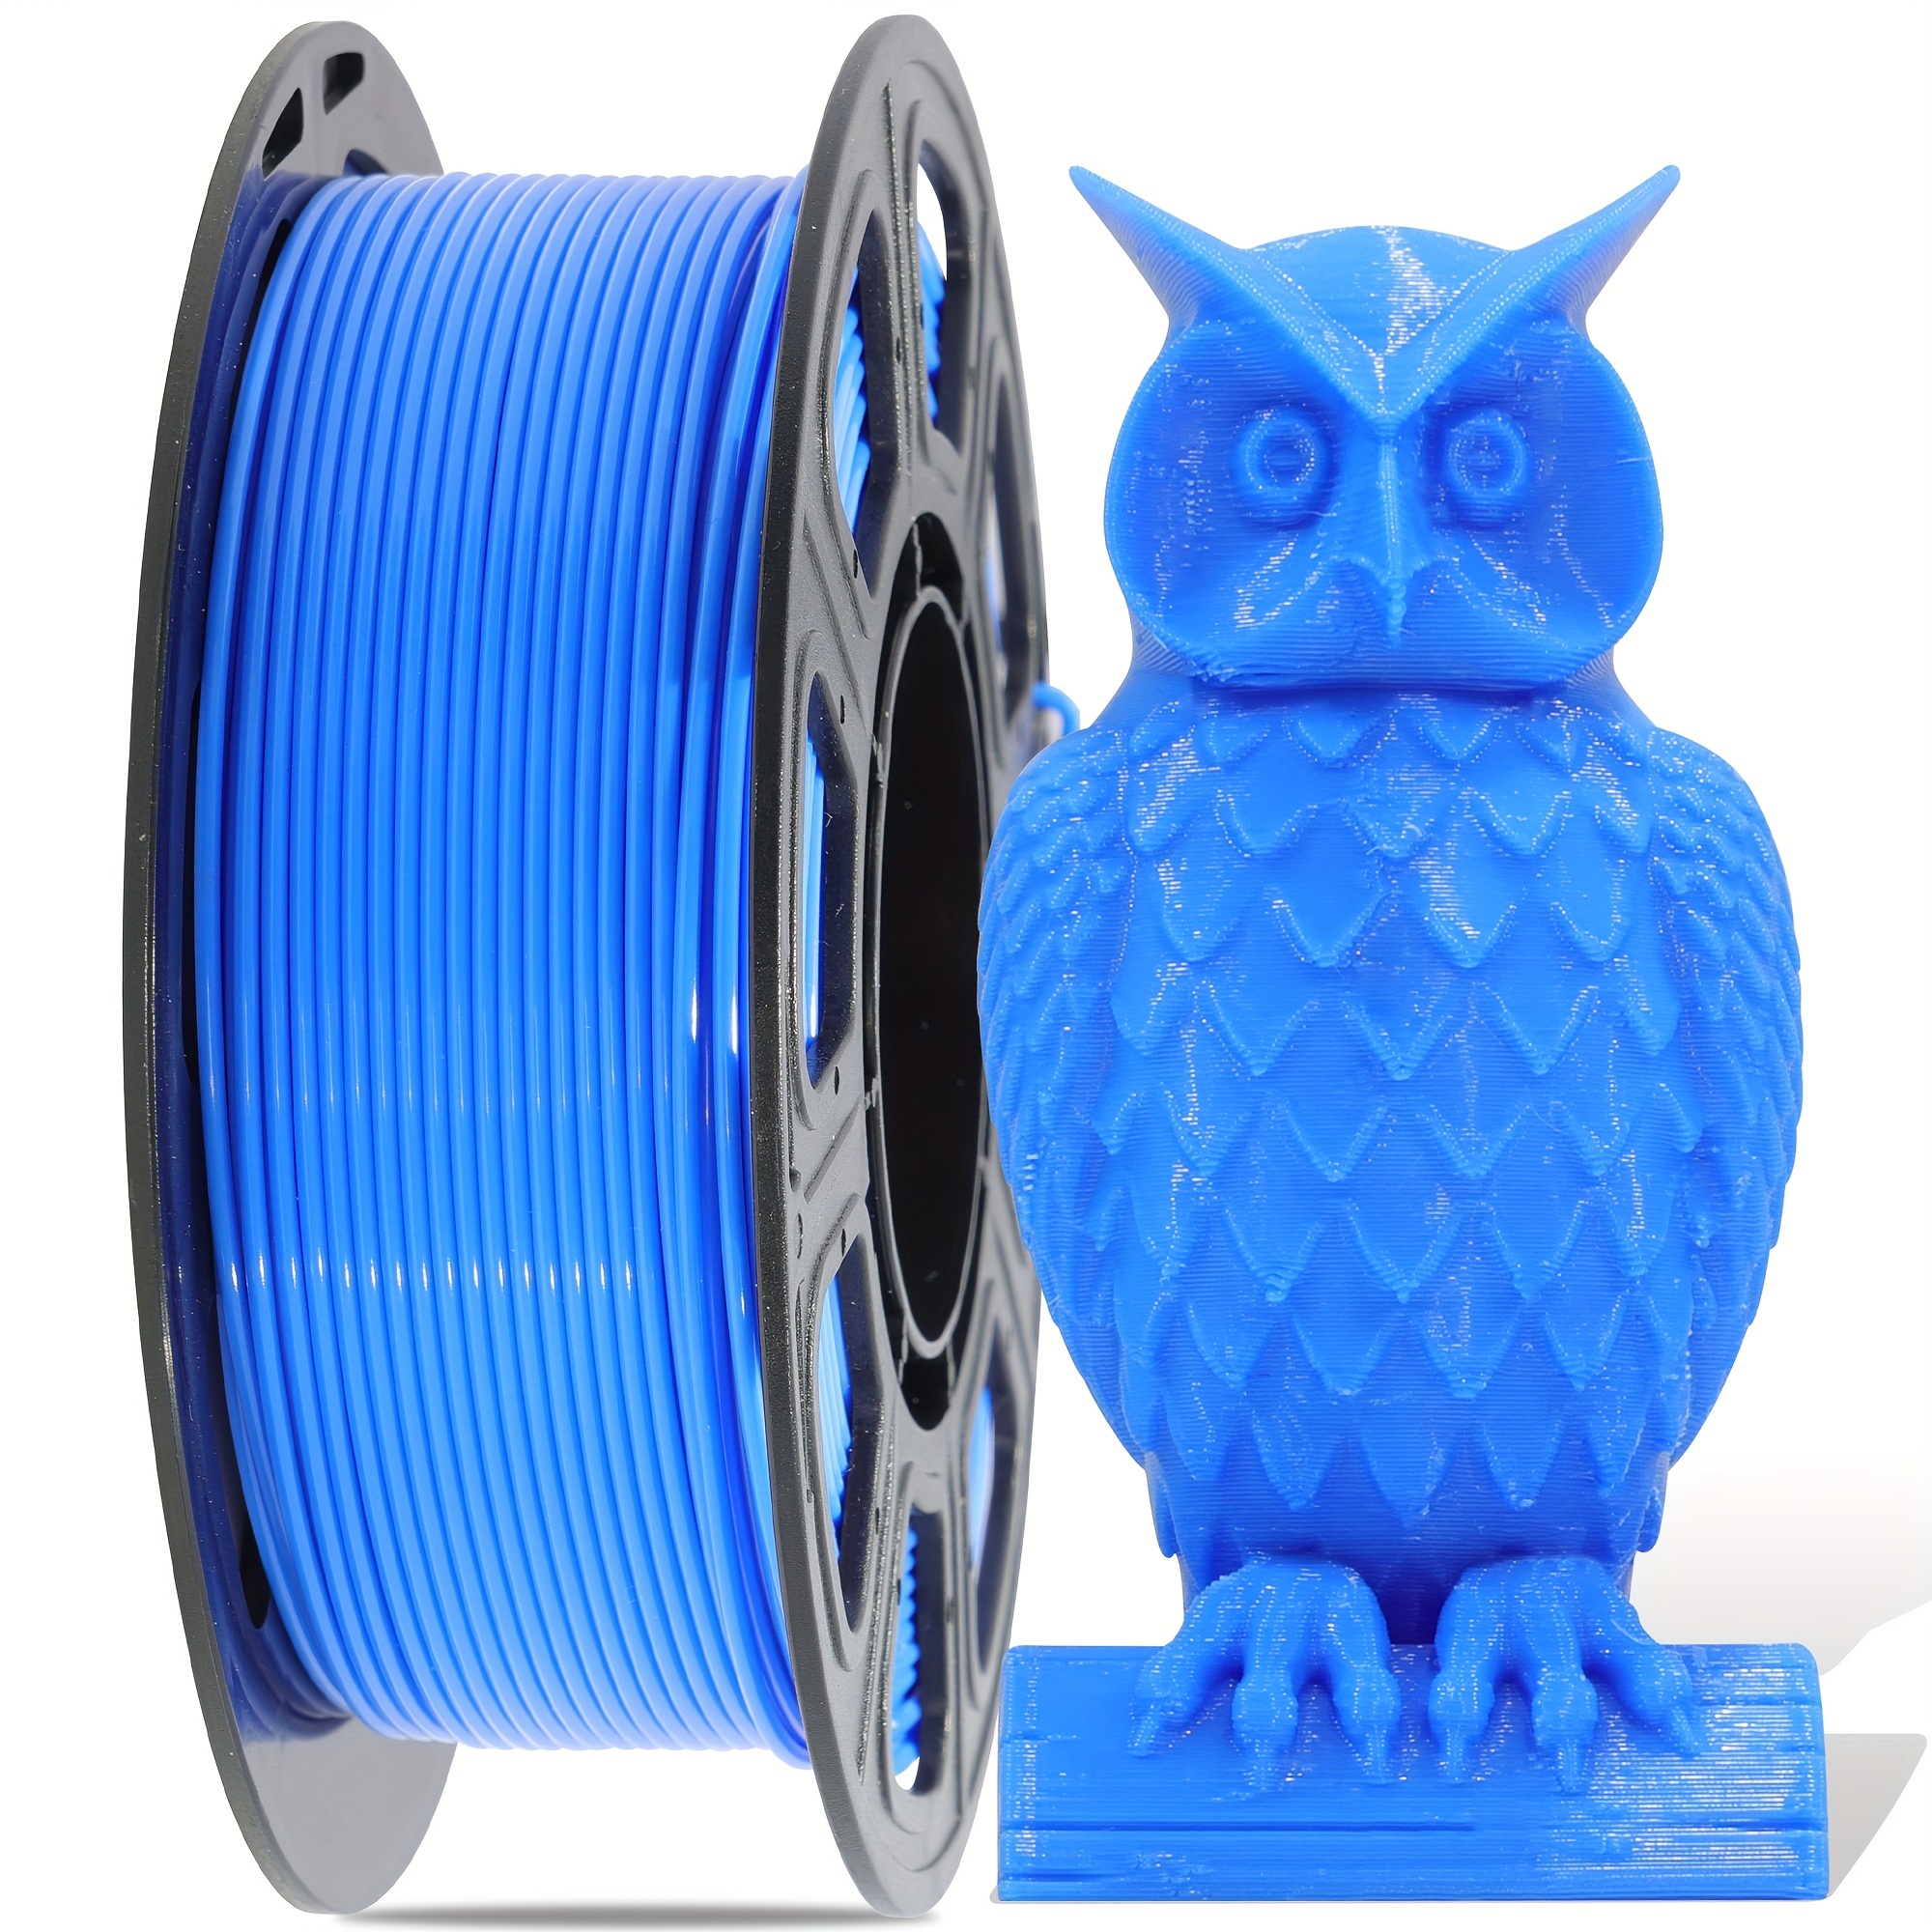 Recharge de filament pour stylo 3D - 1,75 mm - Pour imprimante 3D